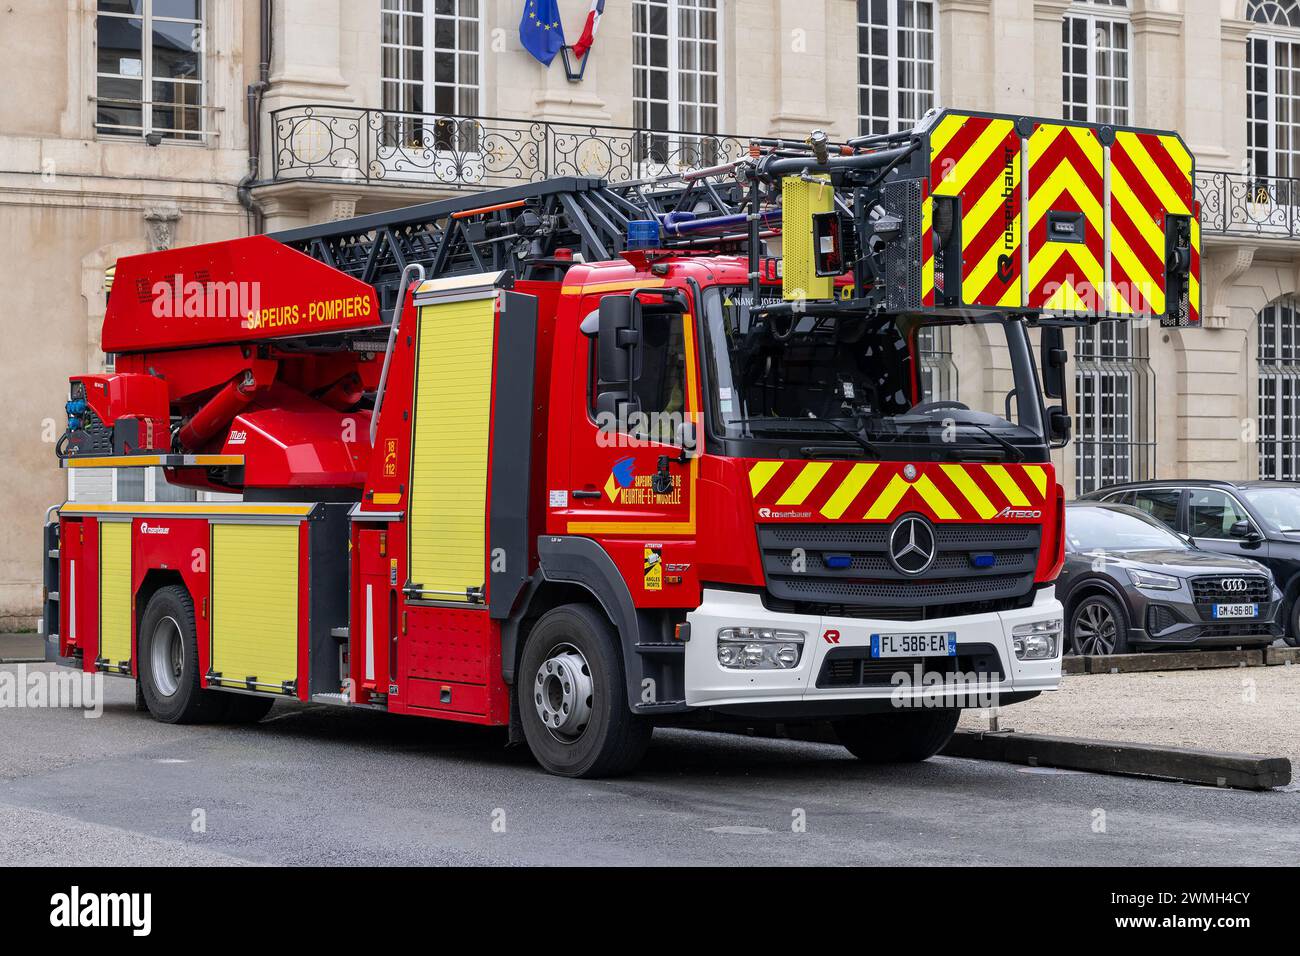 Nancy, Frankreich - Drehleiter mit der Feuerwehr in Frankreich der Feuerwehr und Rettungsdienst Meurthe-et-Moselle (SDIS 54). Stockfoto